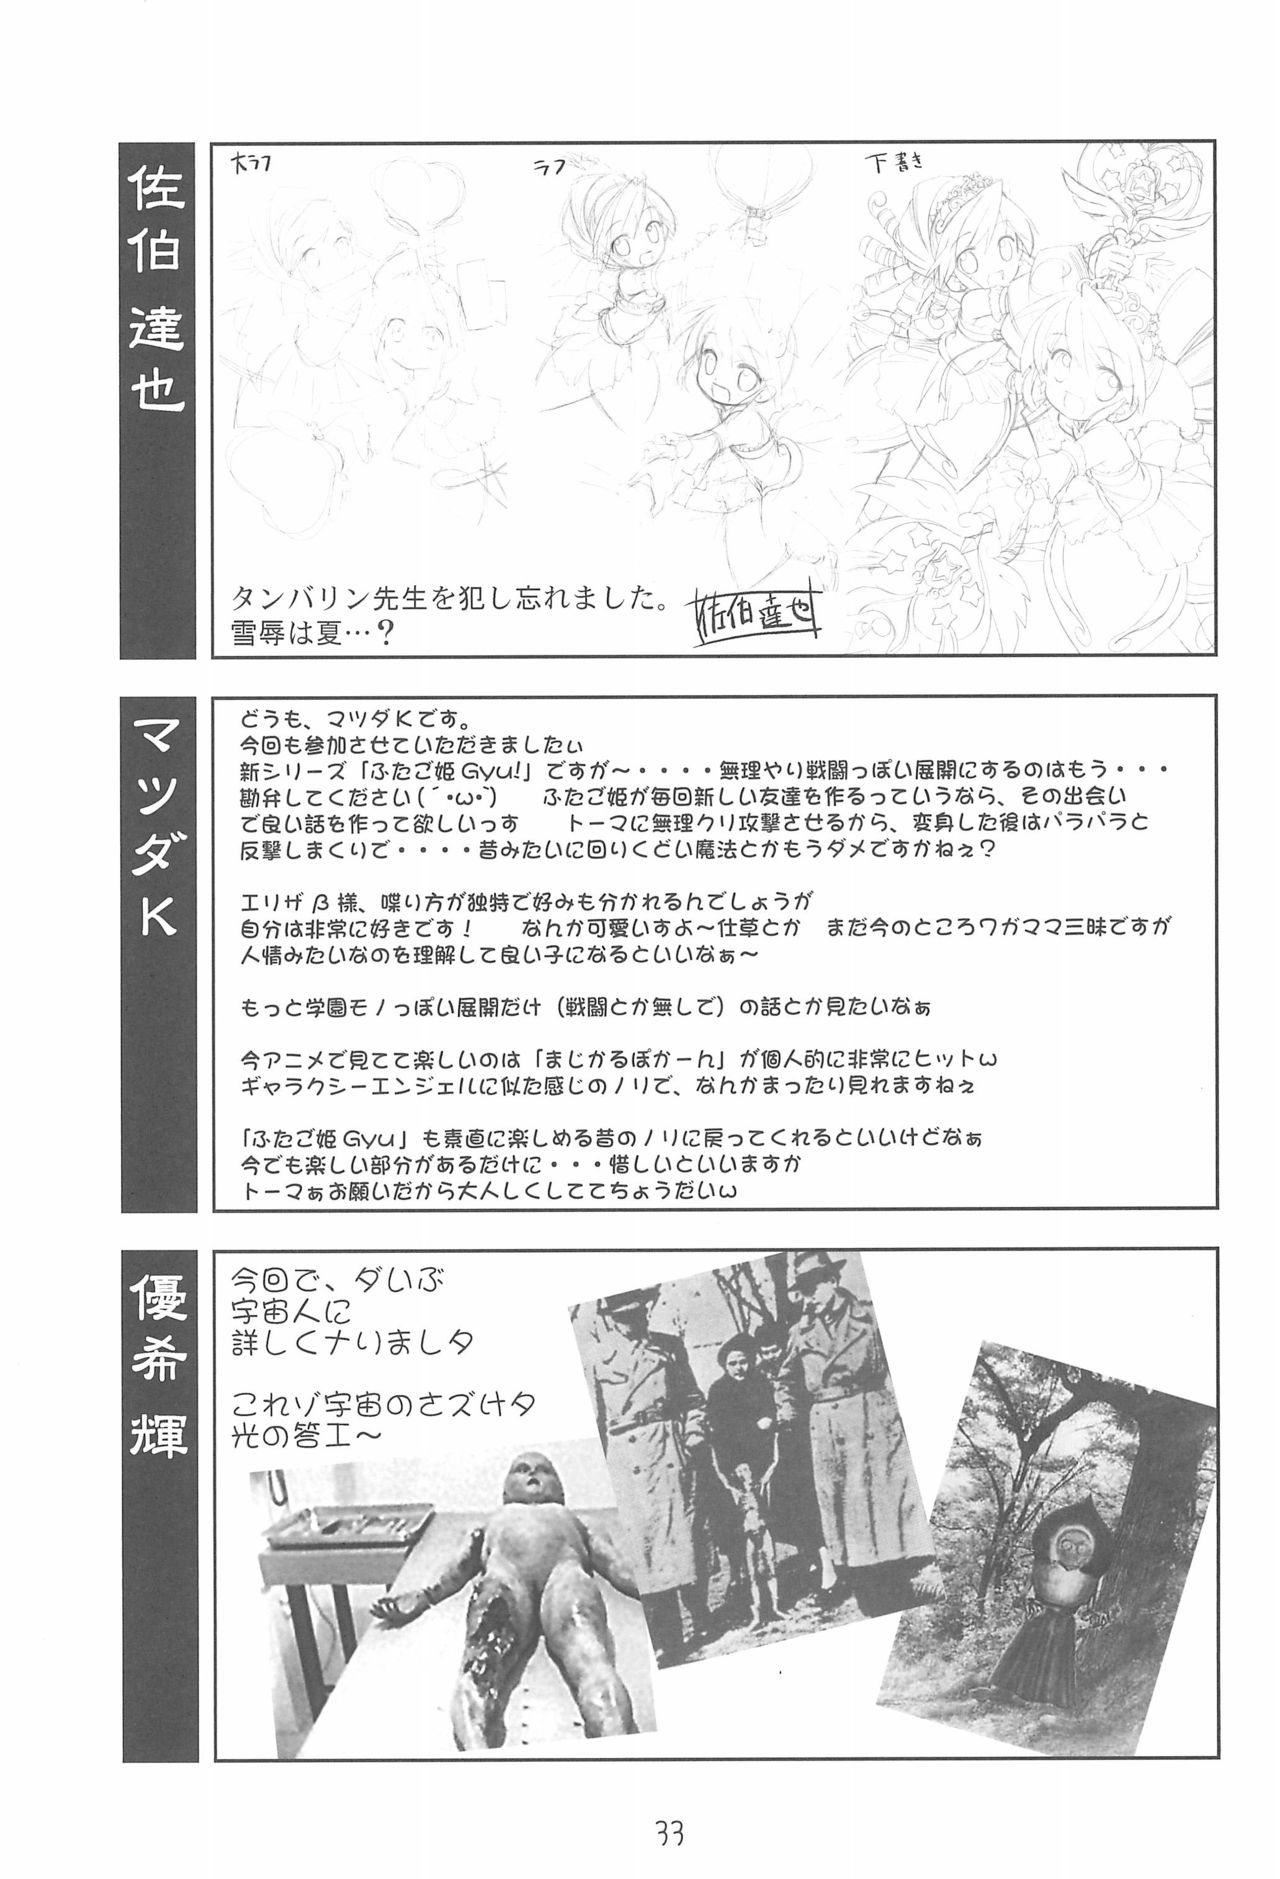 (Puniket 13) [Youki M.K.C. (Various)] Yurumite Gyu (Fushigiboshi no Futago Hime) page 33 full